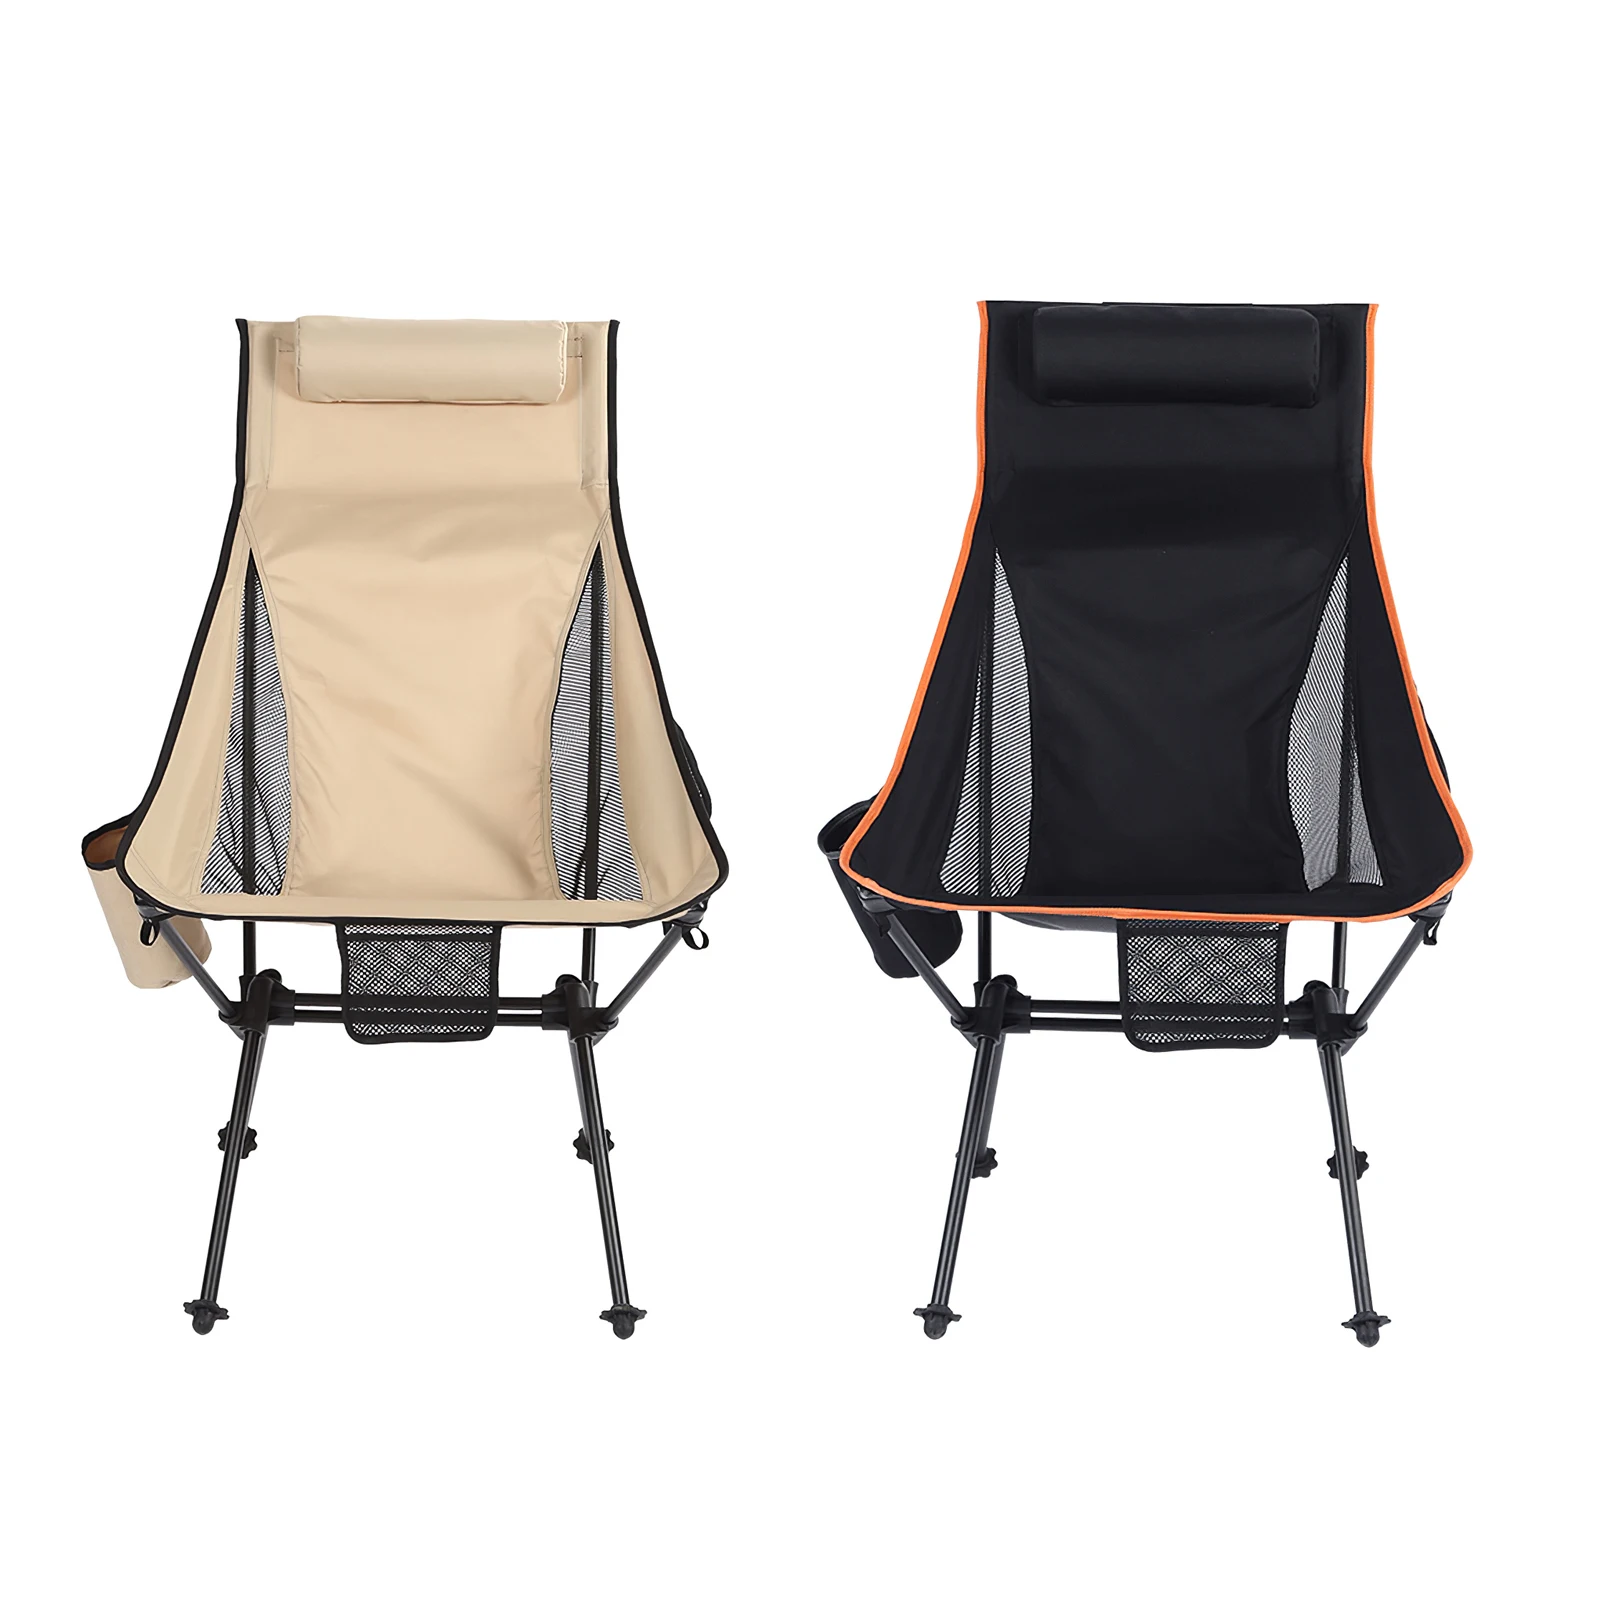 구매 알루미늄 접이식 의자 경량 휴대용 배낭 여행 야외 낚시 캠핑 정원, 스토리지 가방